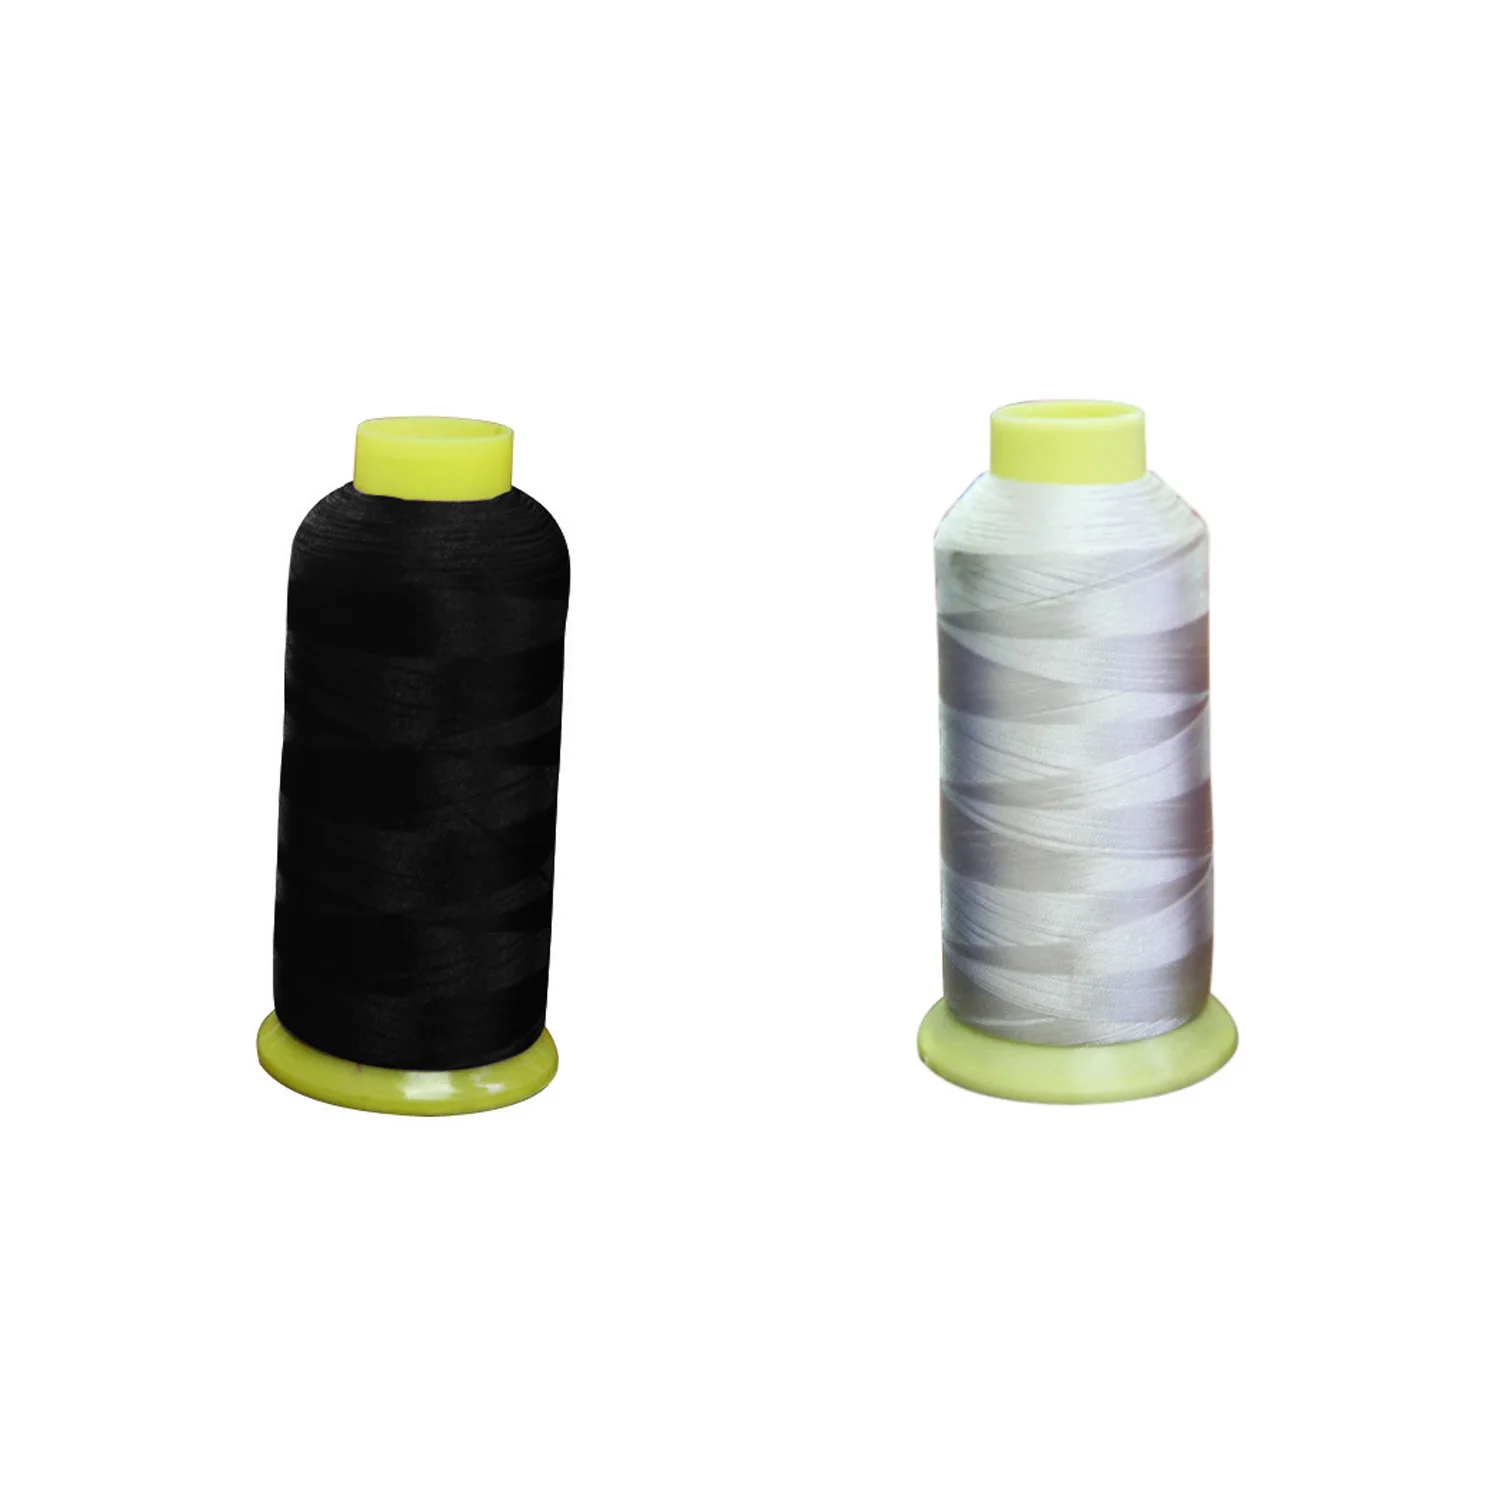 5000m Cones Polyester Bobbin Thread Filament 5 Color for Embroidery Machin 